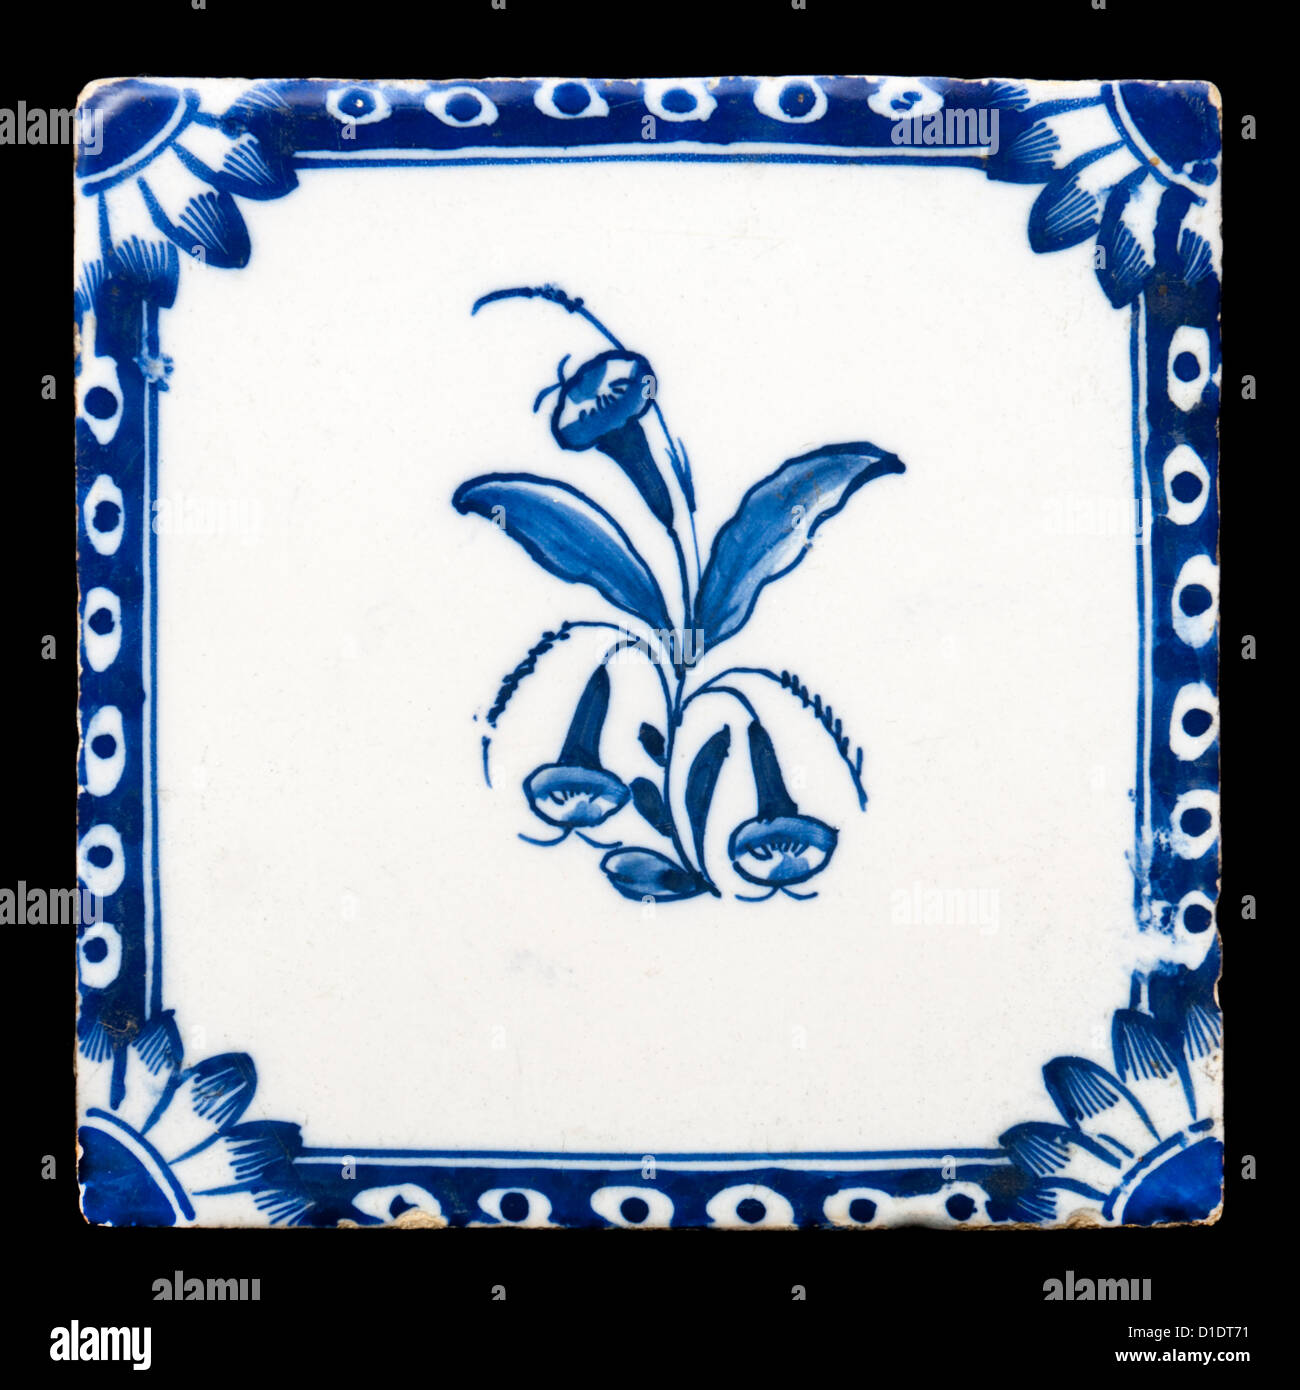 Antique Delft ceramic tile Stock Photo